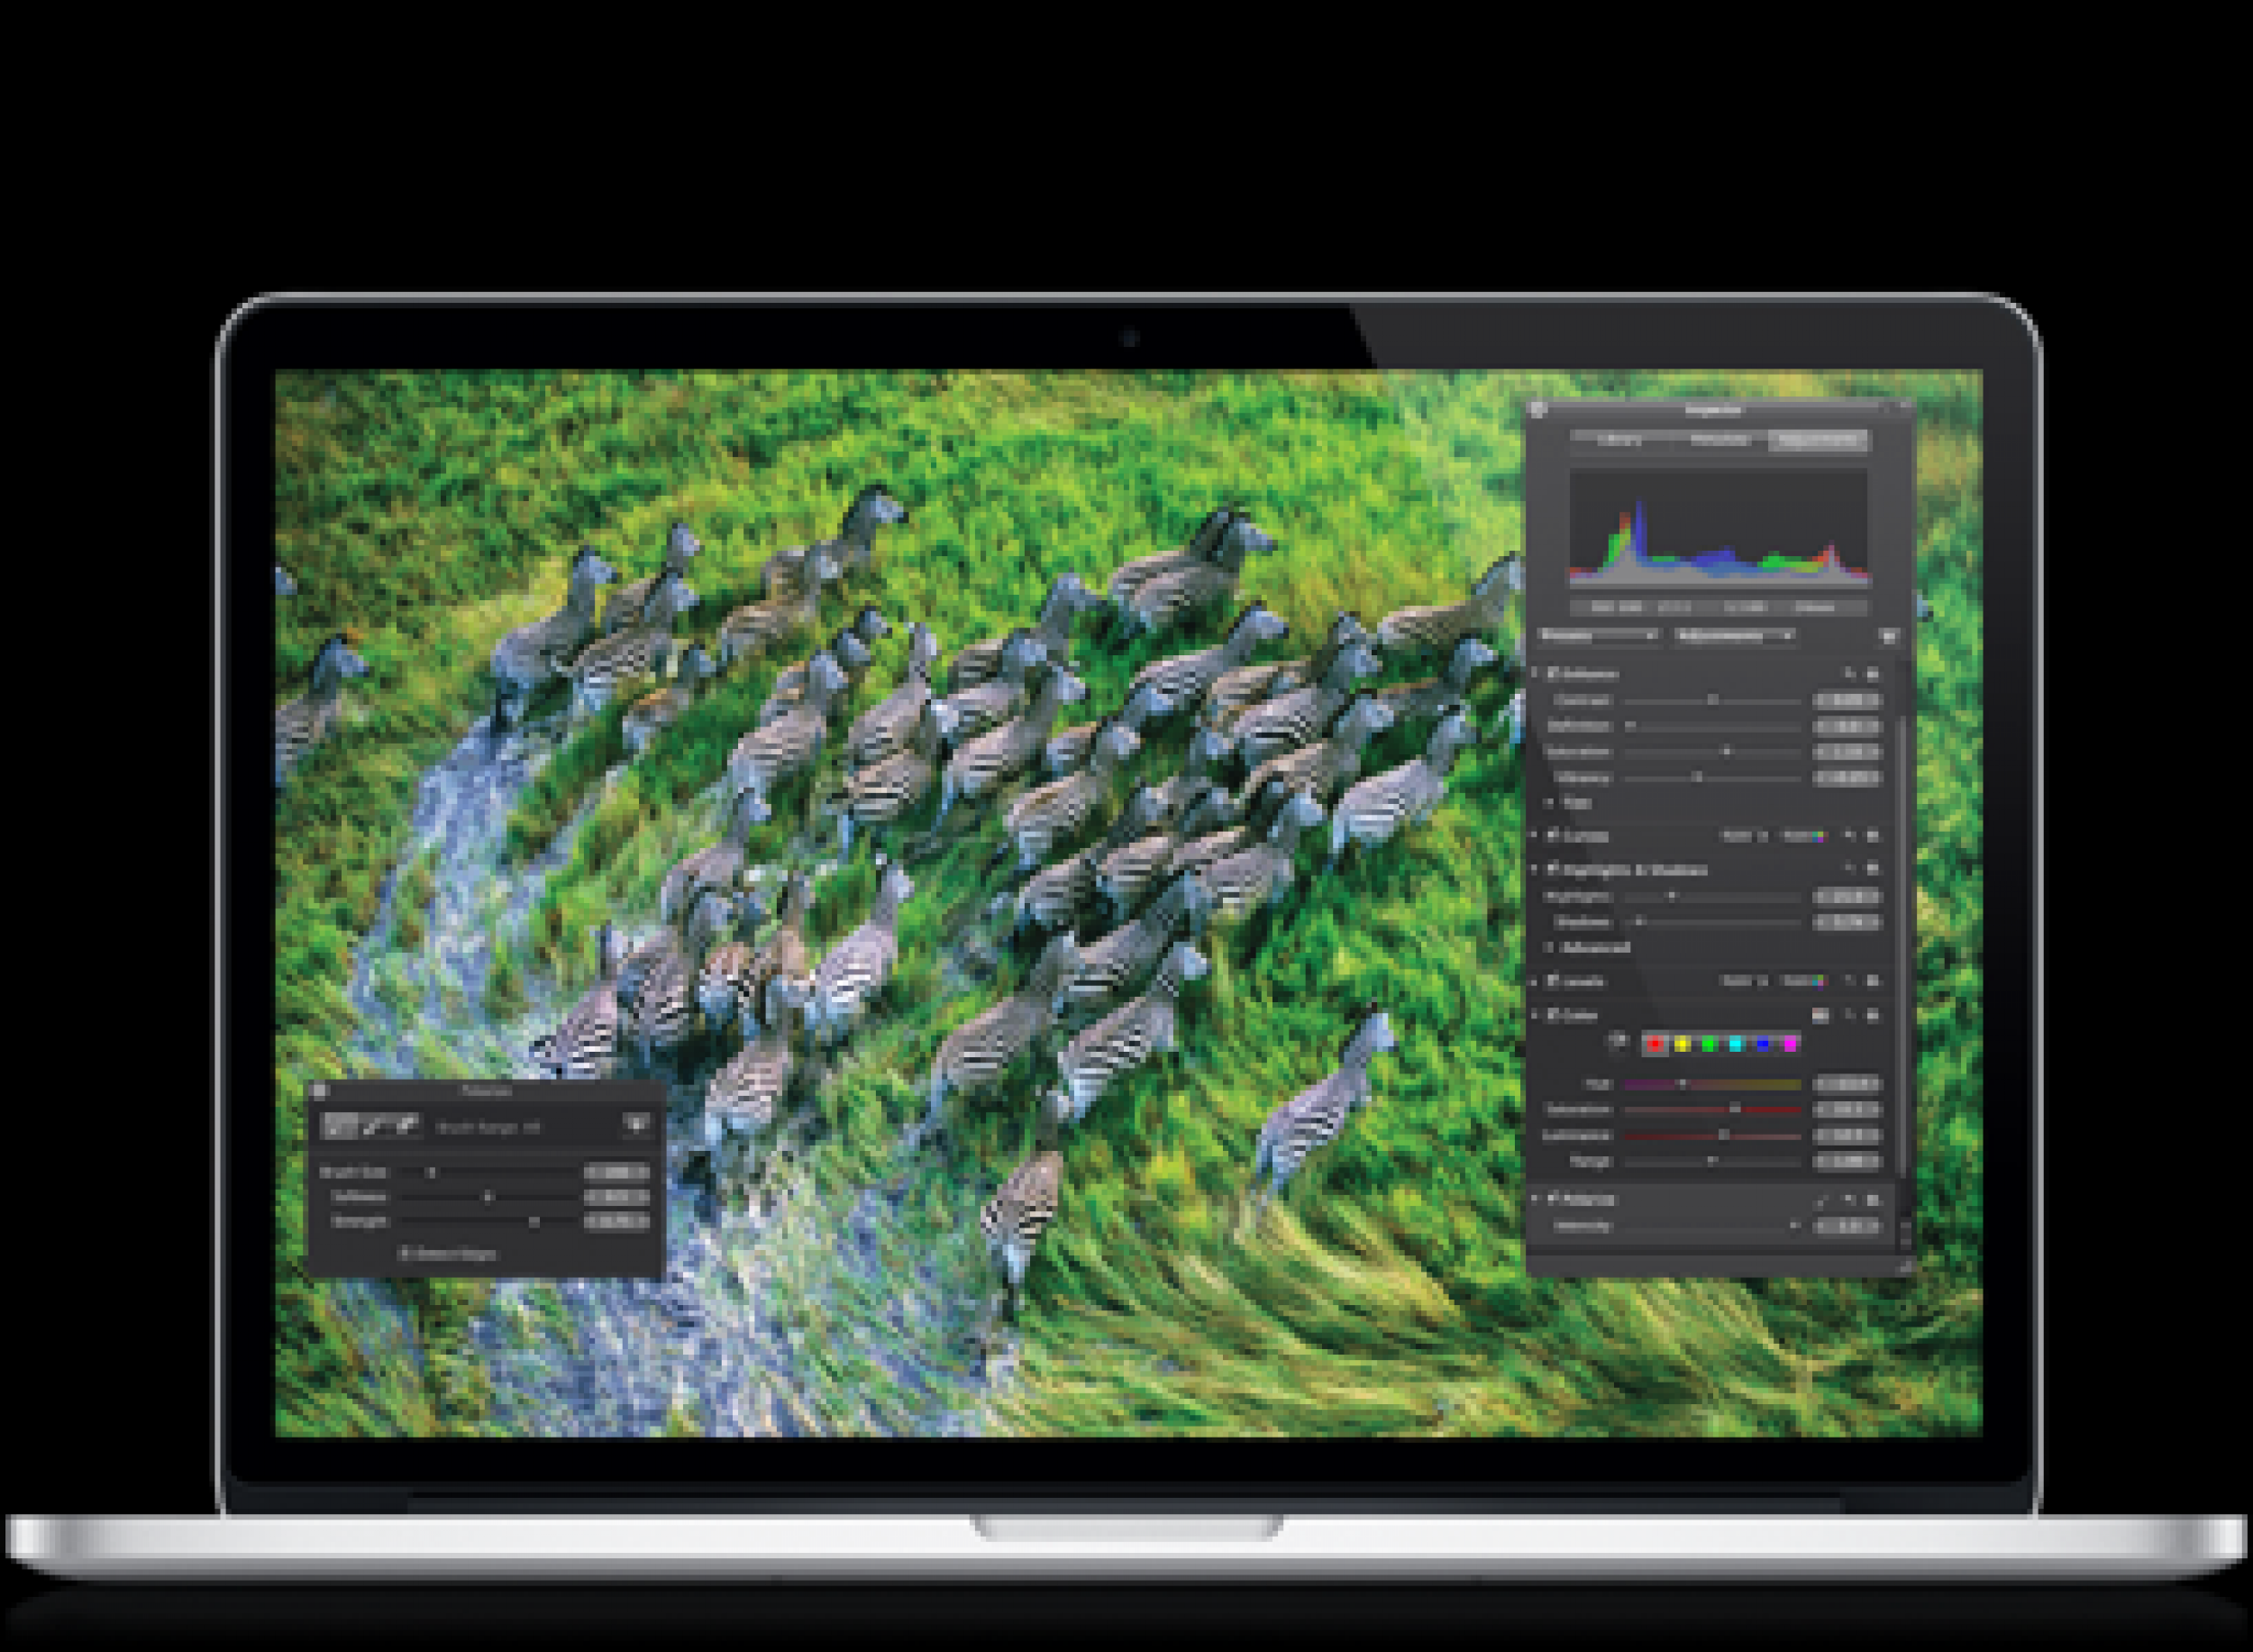 Macbook Pro with Retina Display - wide 10